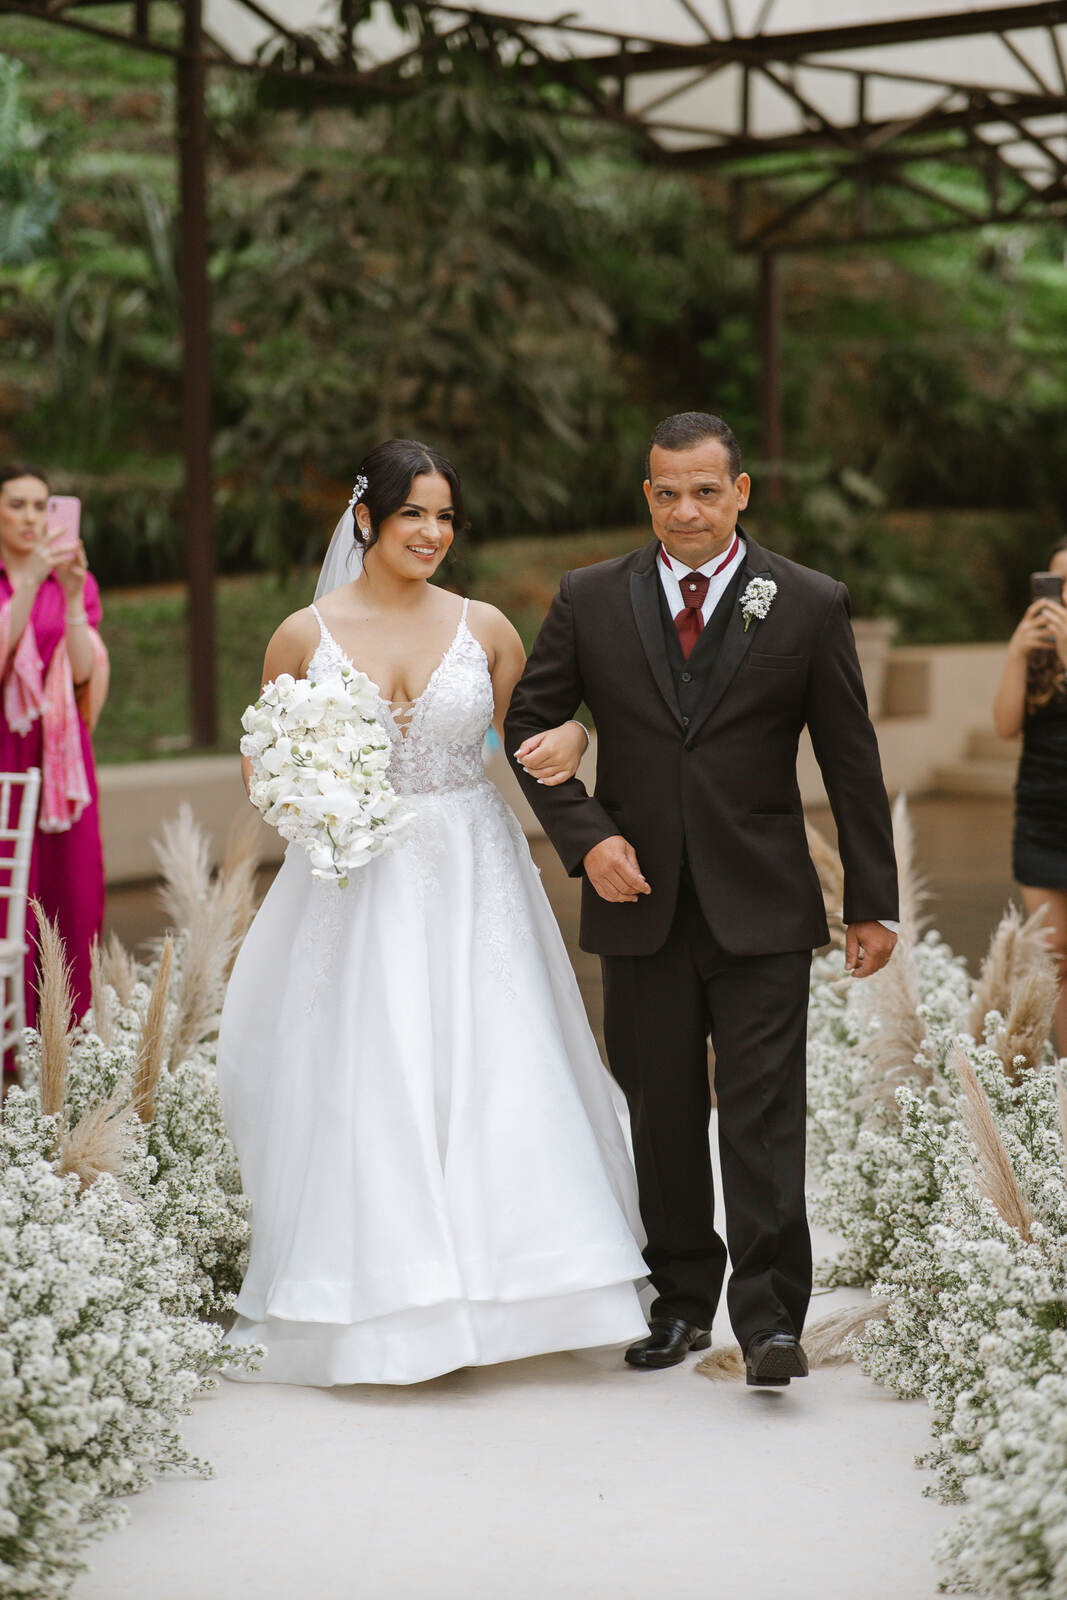 entrada da noiva com buquÊ de orquideas brancsa ao lado do pai com terno preto com gravata vermelha